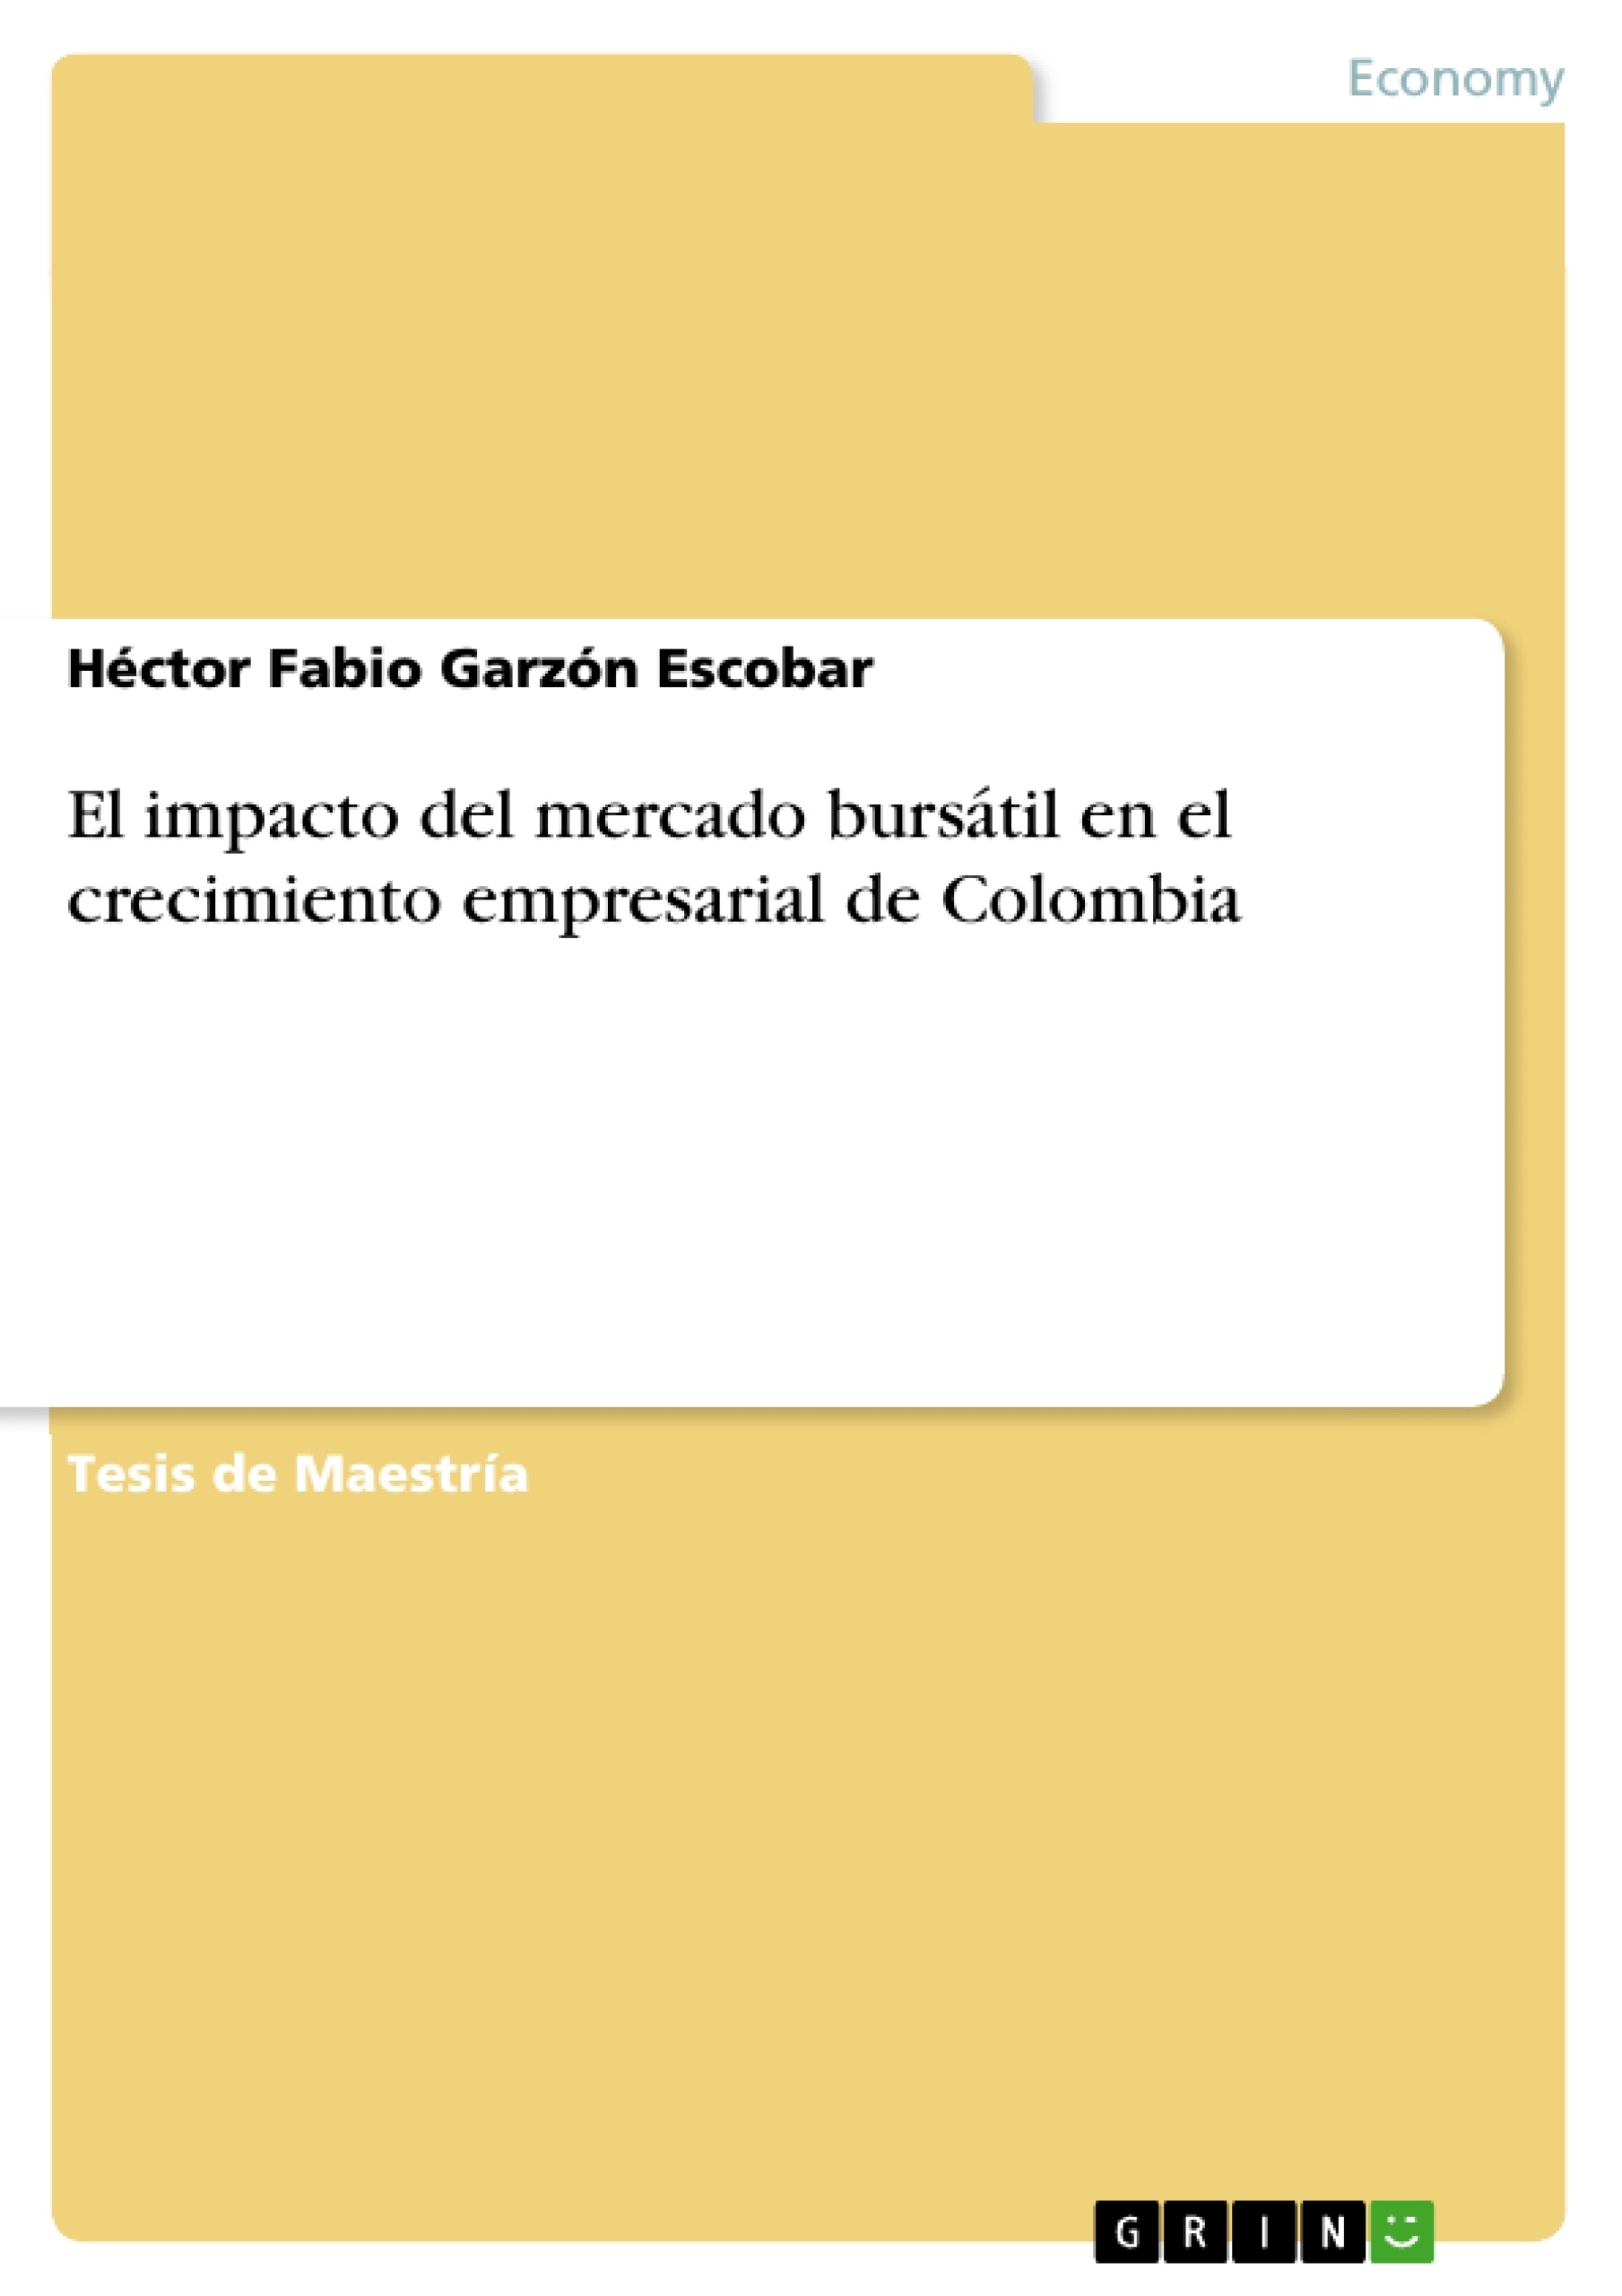 Title: El impacto del mercado bursátil en el crecimiento empresarial de Colombia